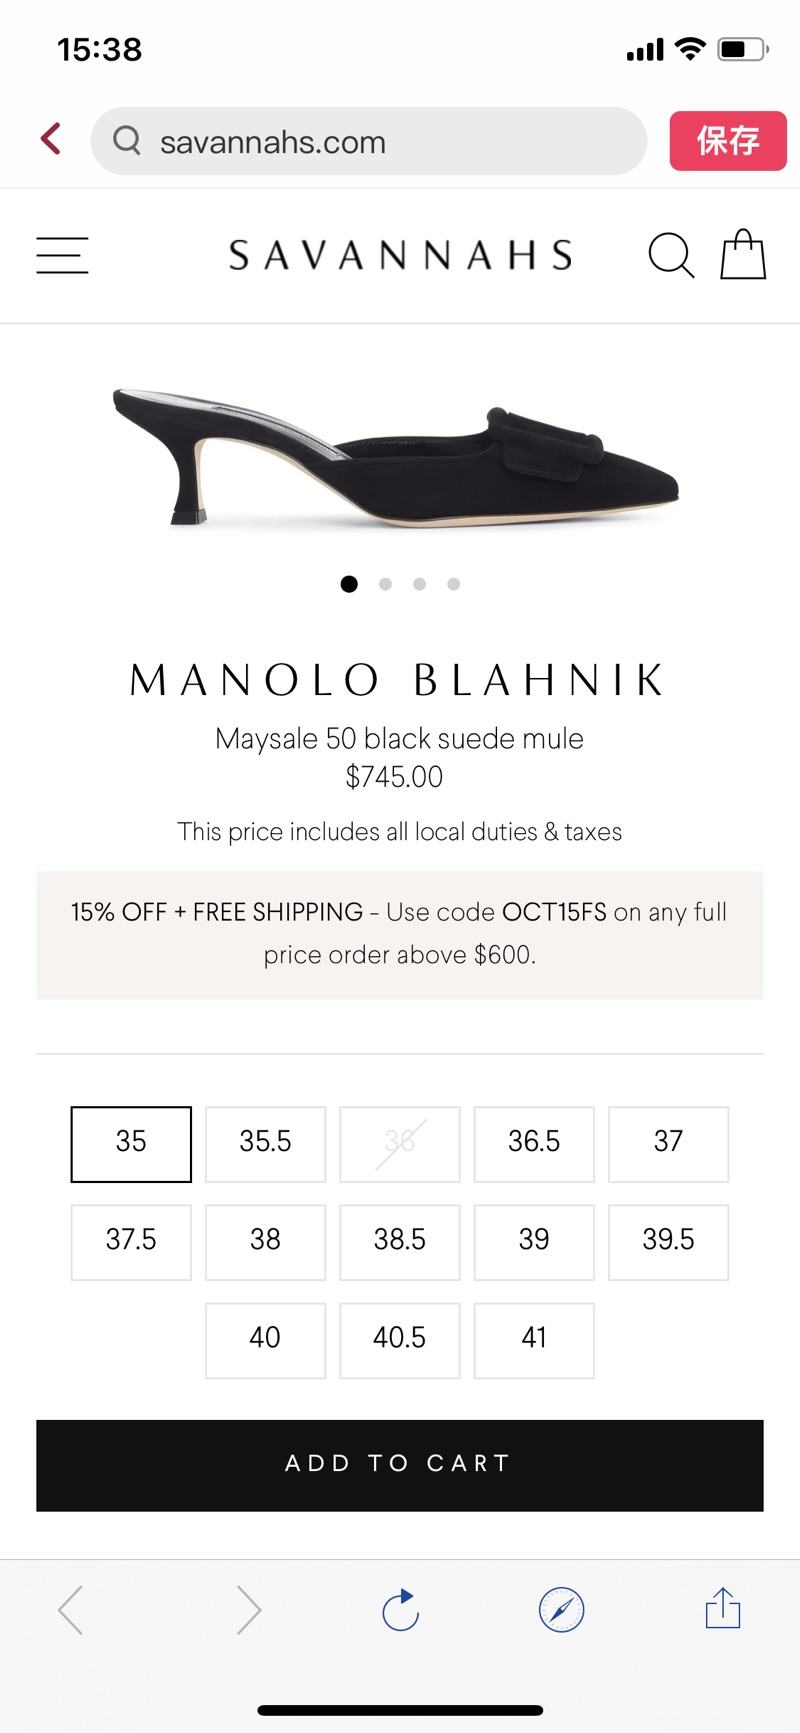 Manolo Blahnik | Maysale 50 black suede mule | Savannahs码全